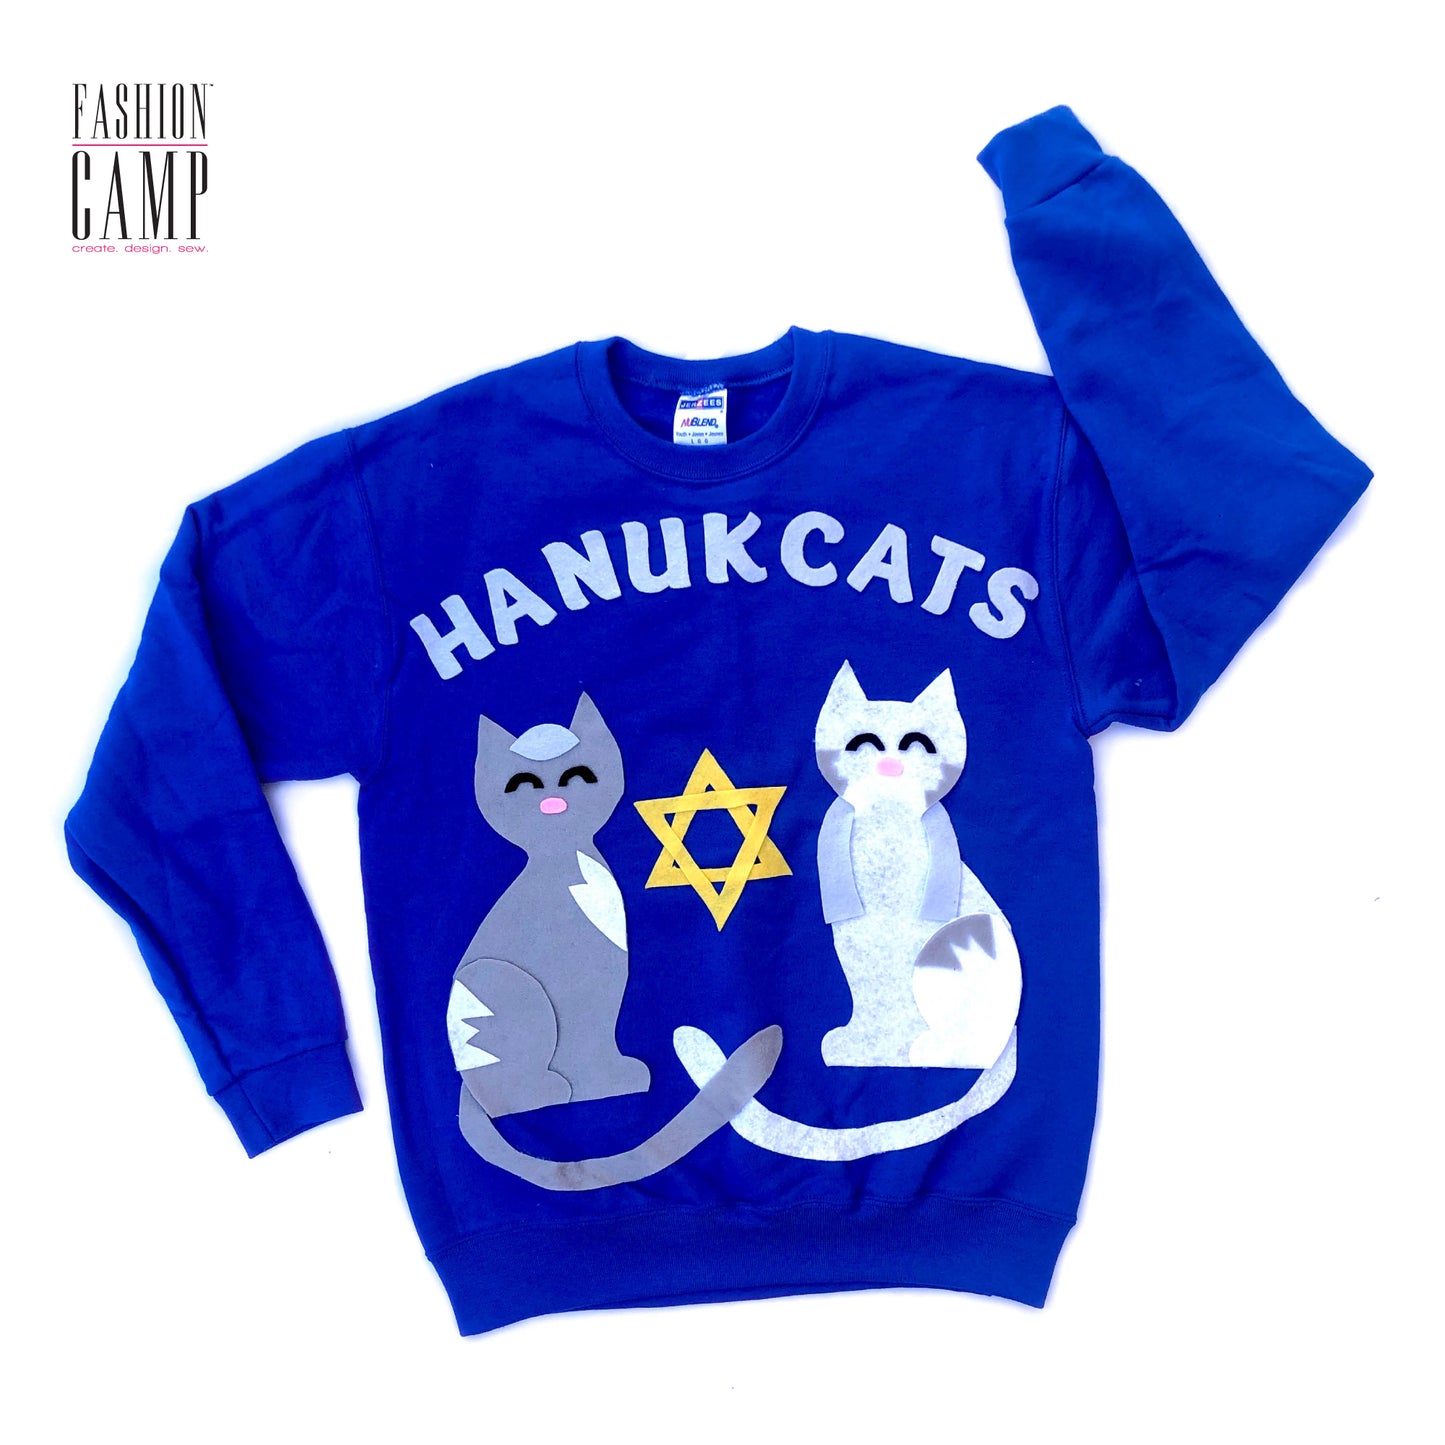 DIY Kit Ugly Hanukkah Sweater  |  Hanukcats "Ugly" Holiday Sweater